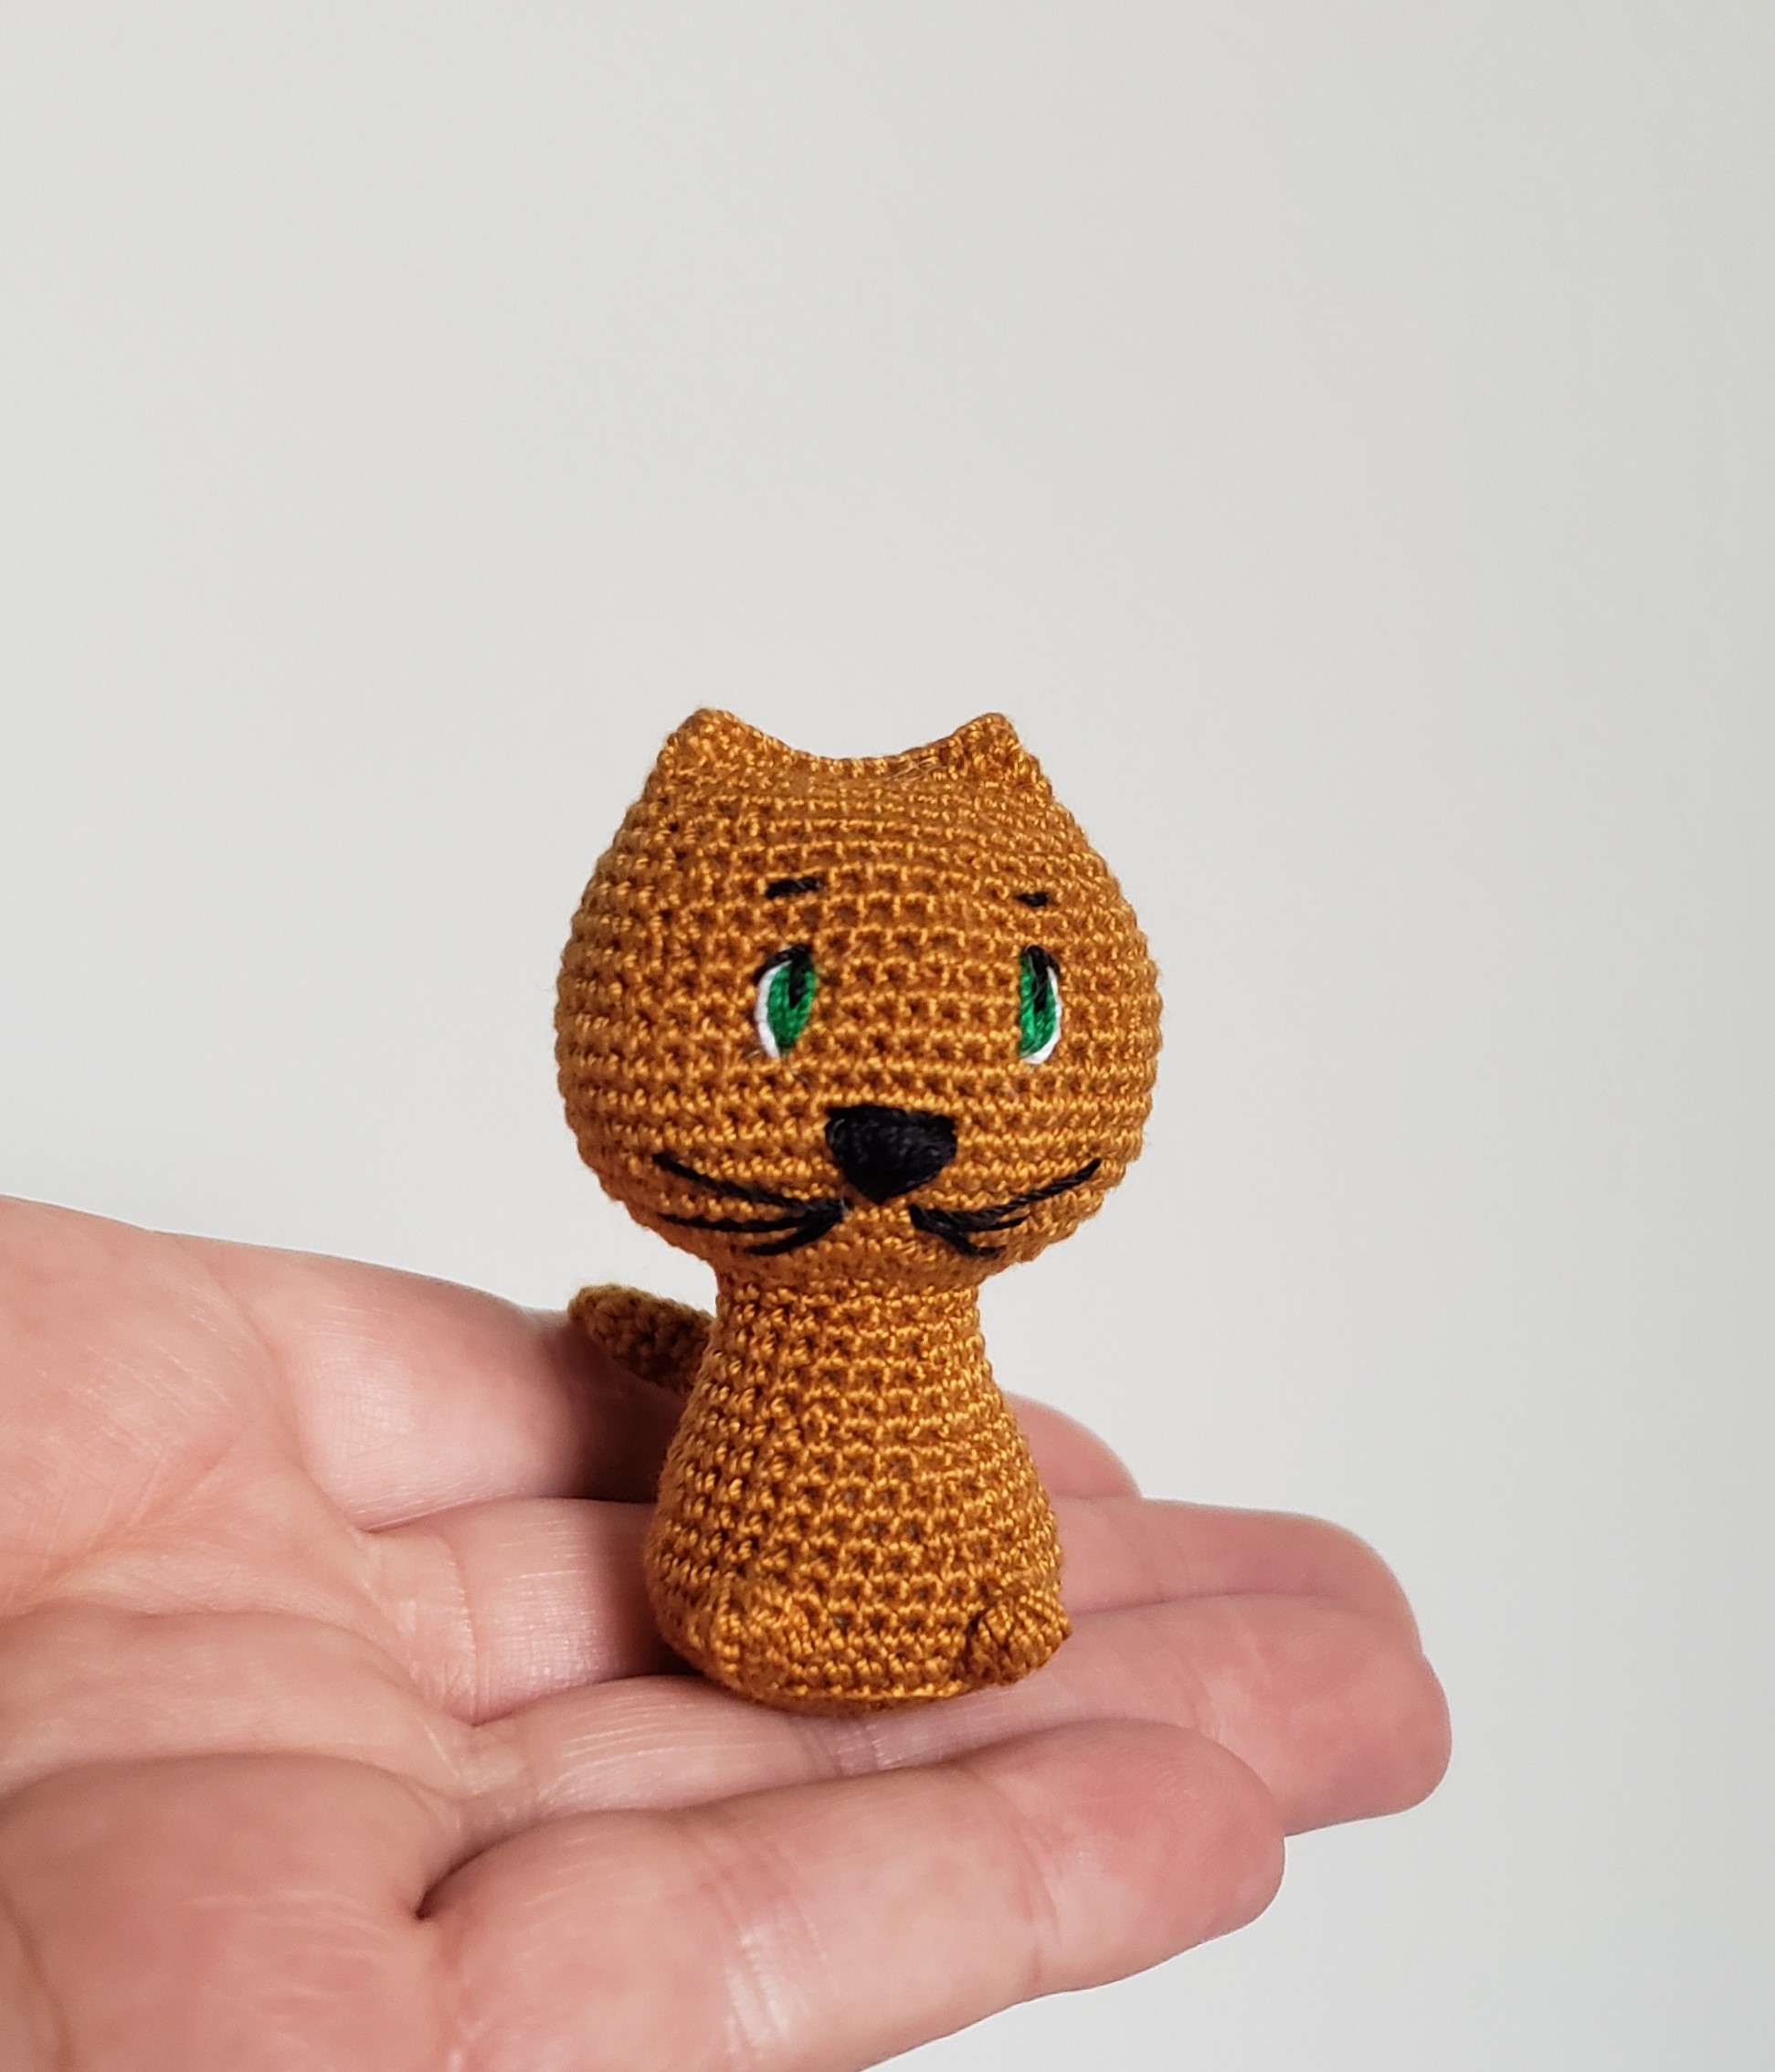 chat marron amigurumi kawaii yeux verts avec attache pour porte clés au  crochet, Miniature Amigurumi cadeau artisanal